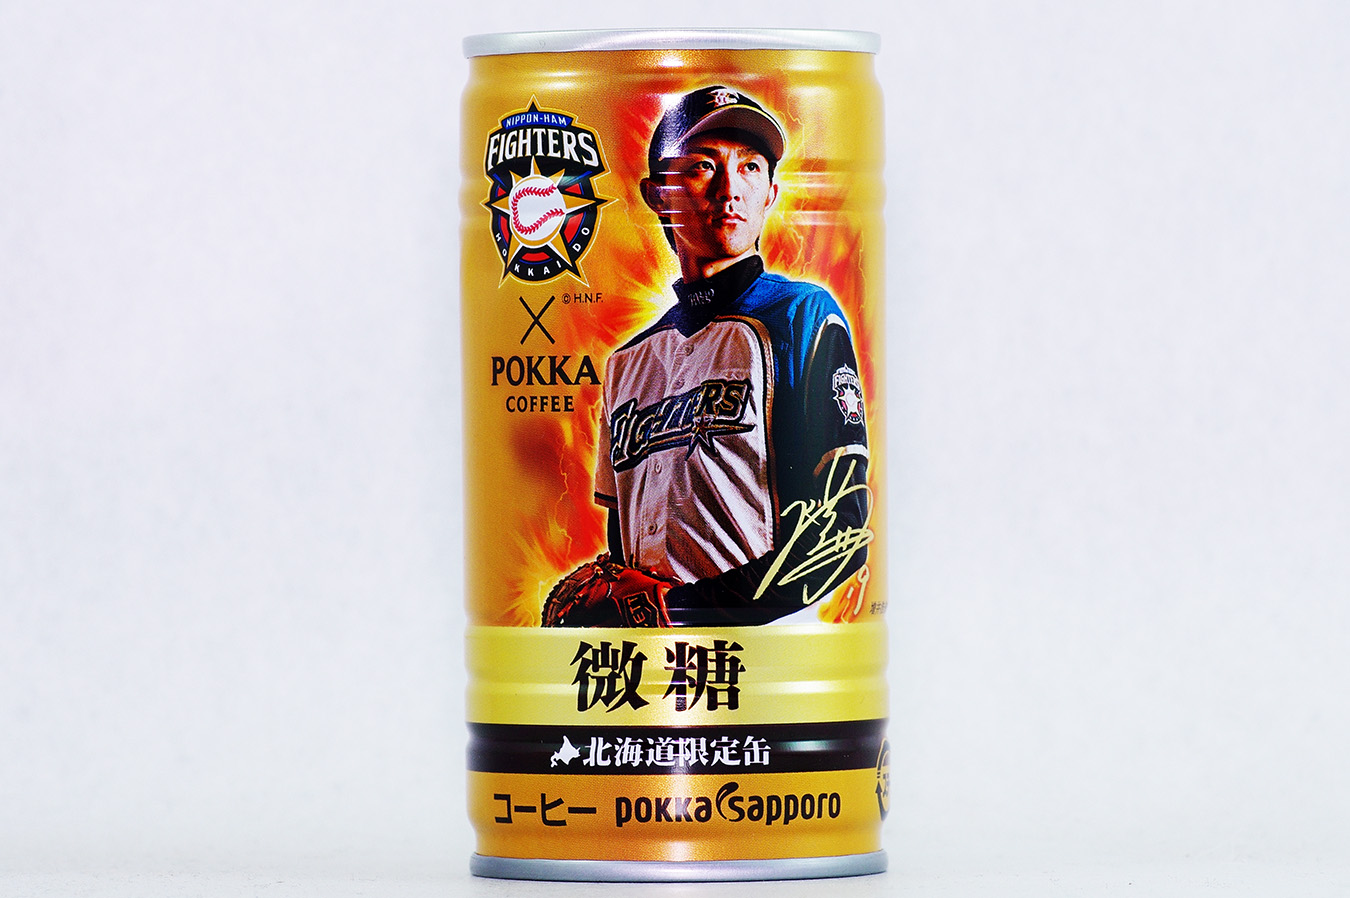 ポッカコーヒー ファイターズ2016年選手缶 微糖 増井浩俊選手 2016年10月